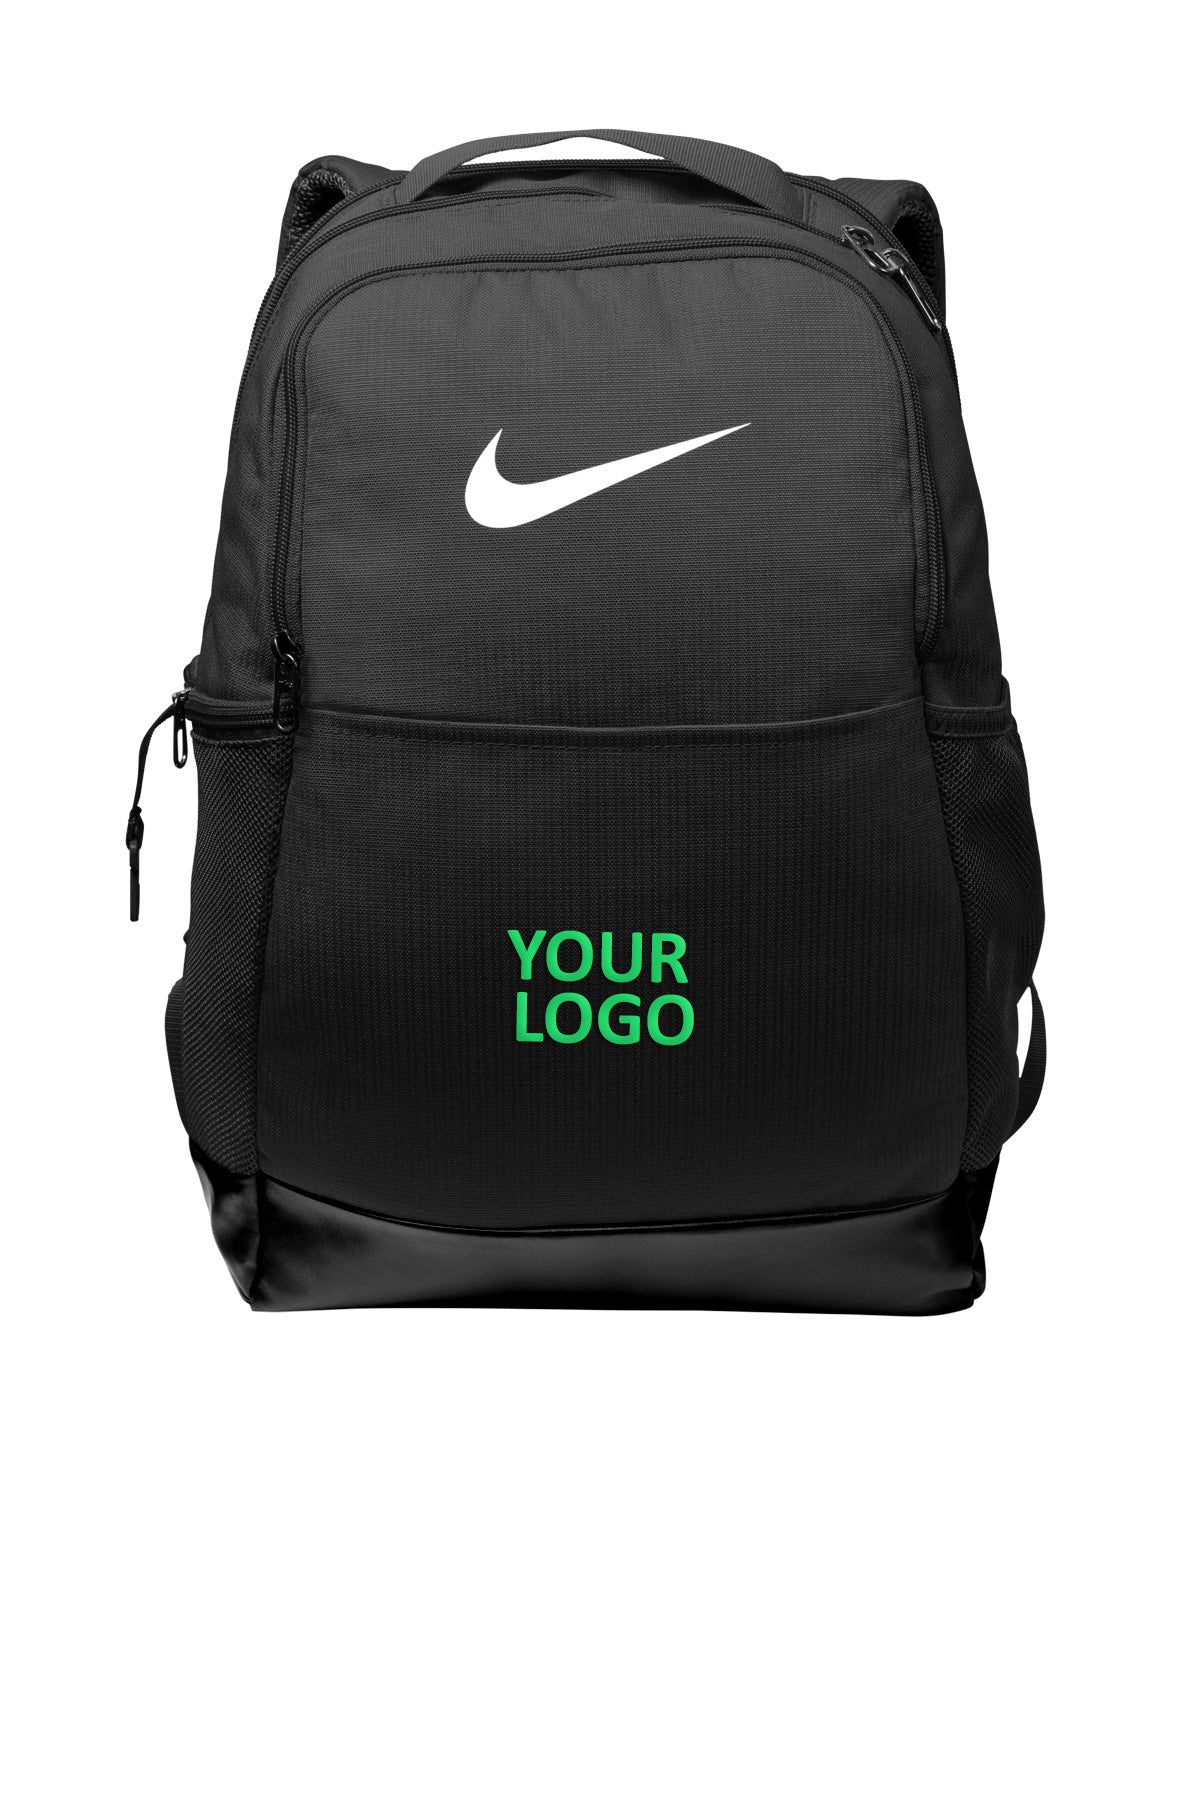 BA5954 Nike Brasilia Backpack, 49% OFF